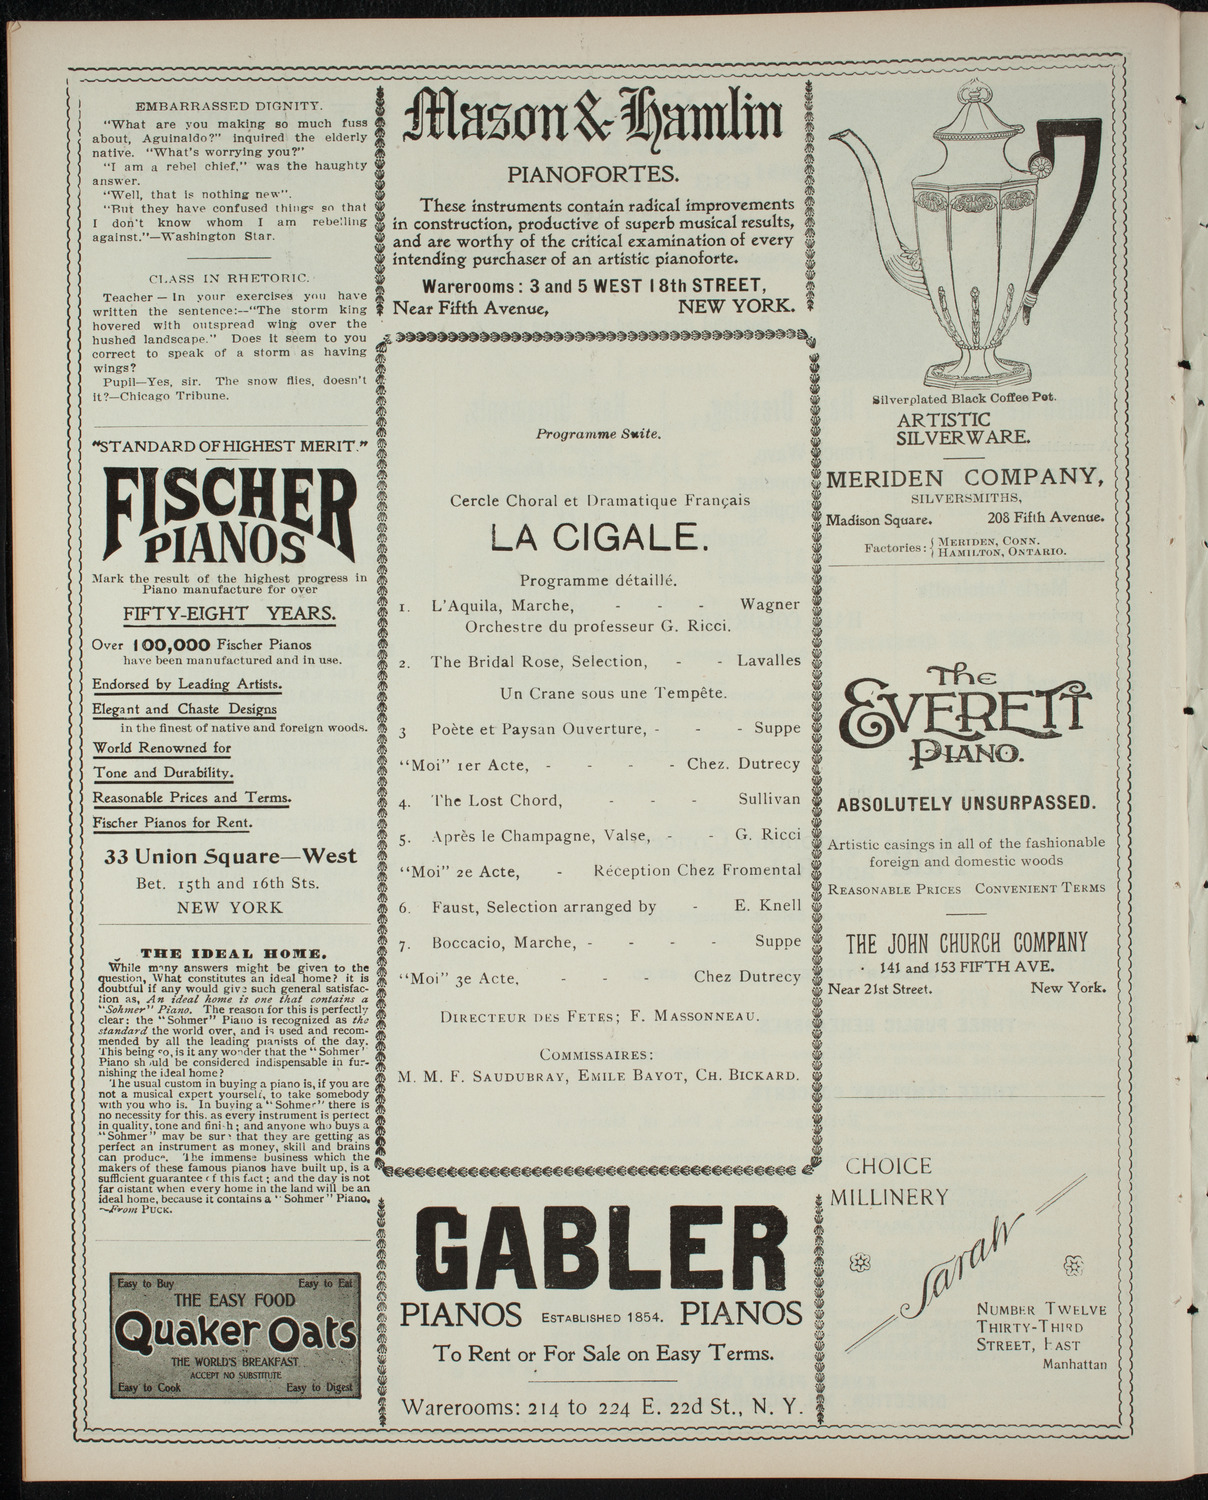 Cercle Choral et Dramatique Francais "La Cigale", December 10, 1898, program page 6